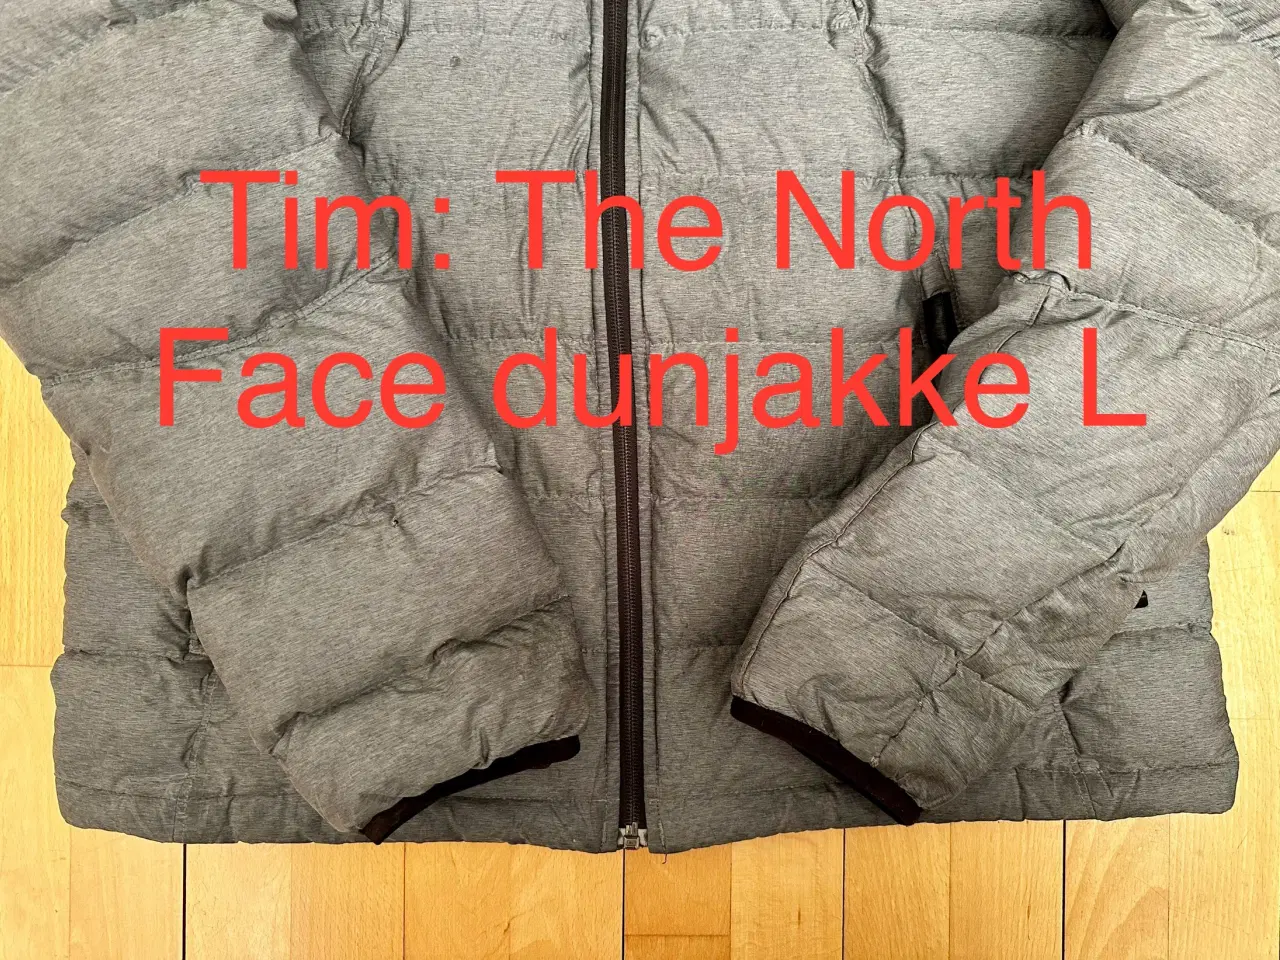 Billede 4 - The North Face dunjakke L 